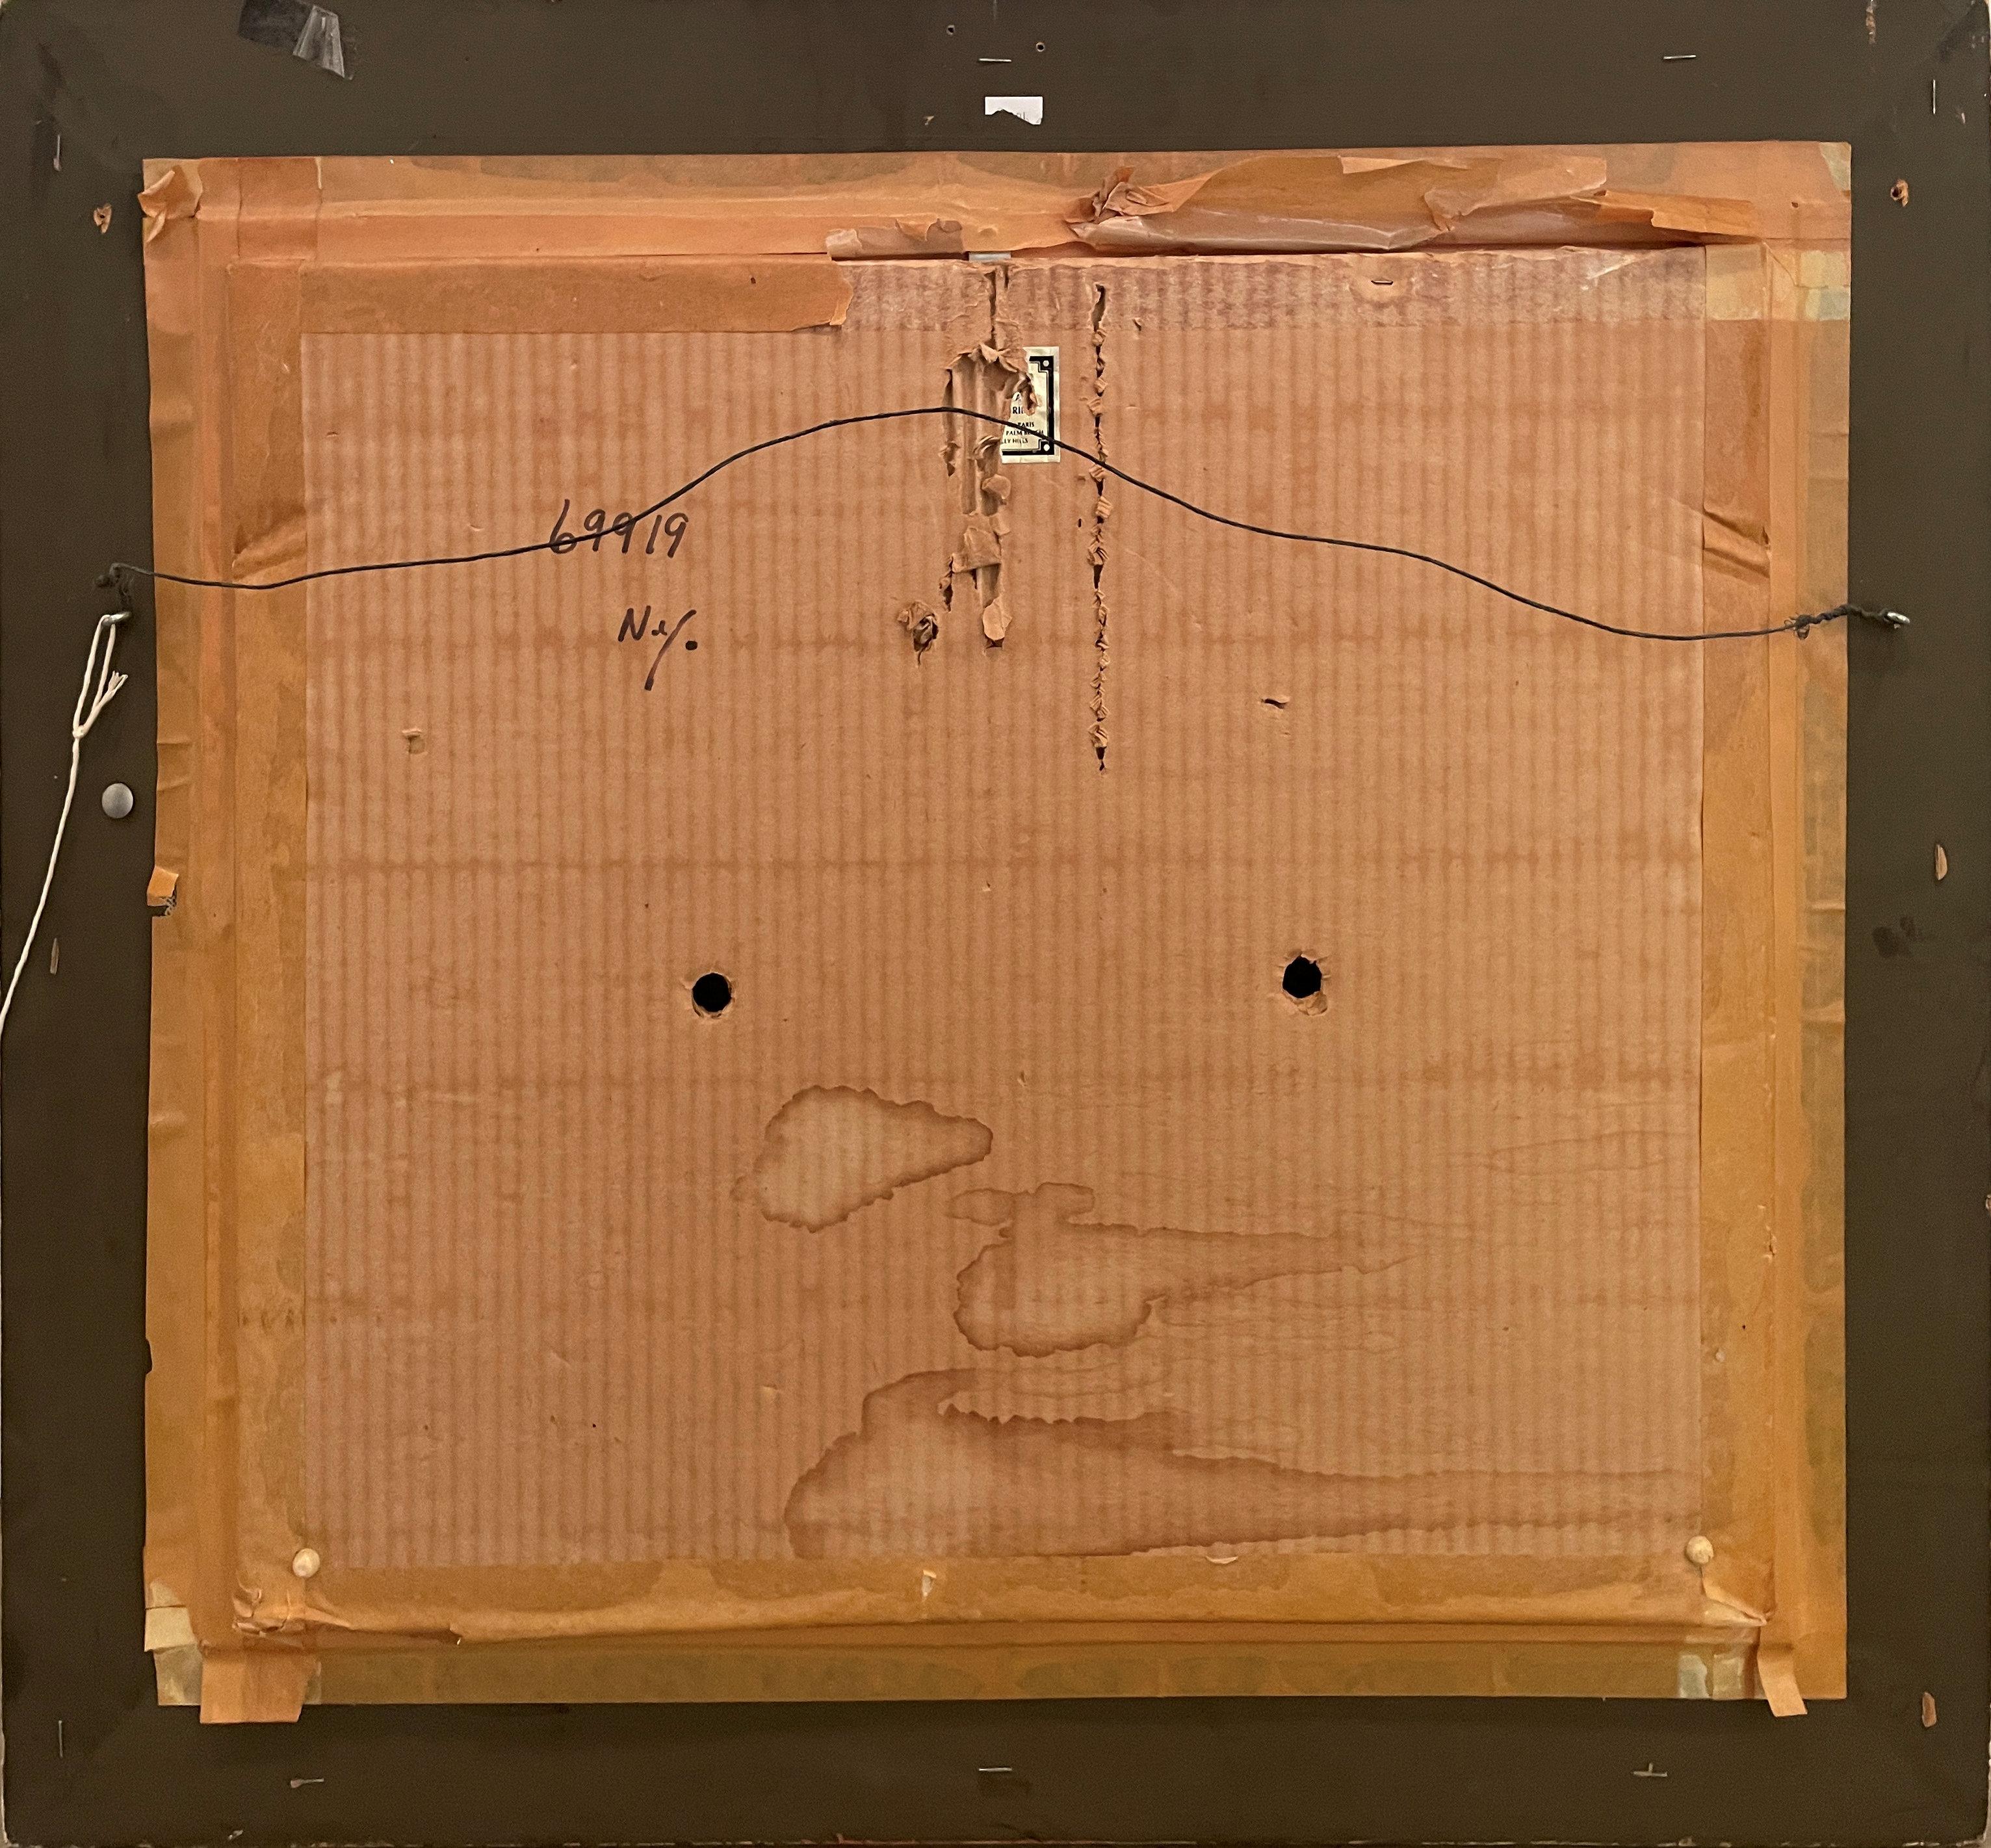 Frederick Arthur Jessup
Stillleben-Arrangement
Signiert unten links
Öl auf Leinwand
18 1/2 x 22 Zoll

Provenienz:
Findlay-Galerien, New York
Private Collection, New York